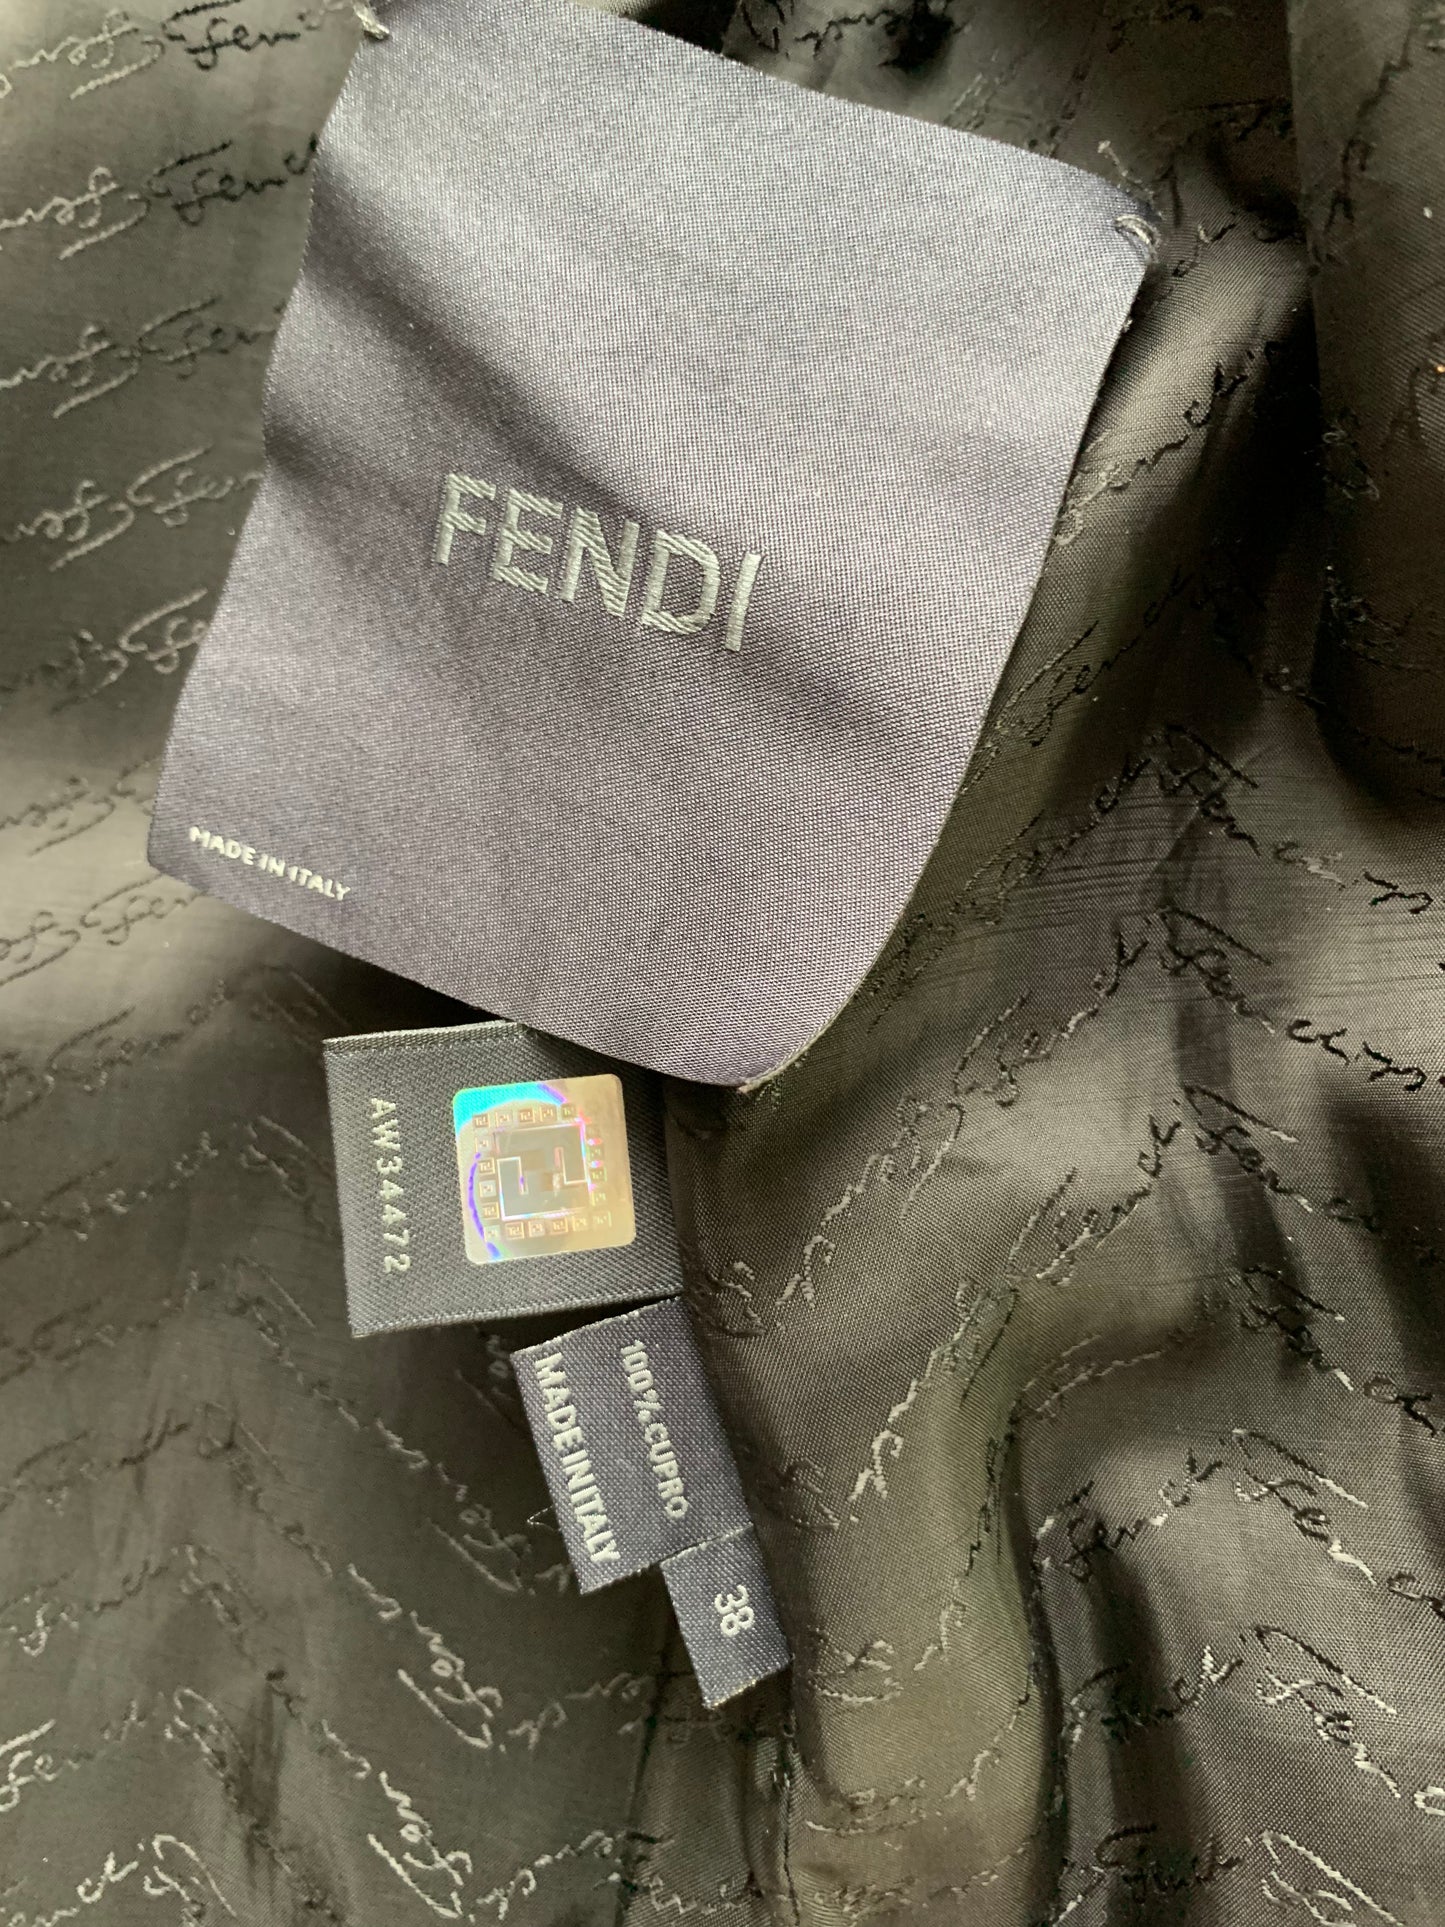 FENDI - Mink fur black size 38 IT